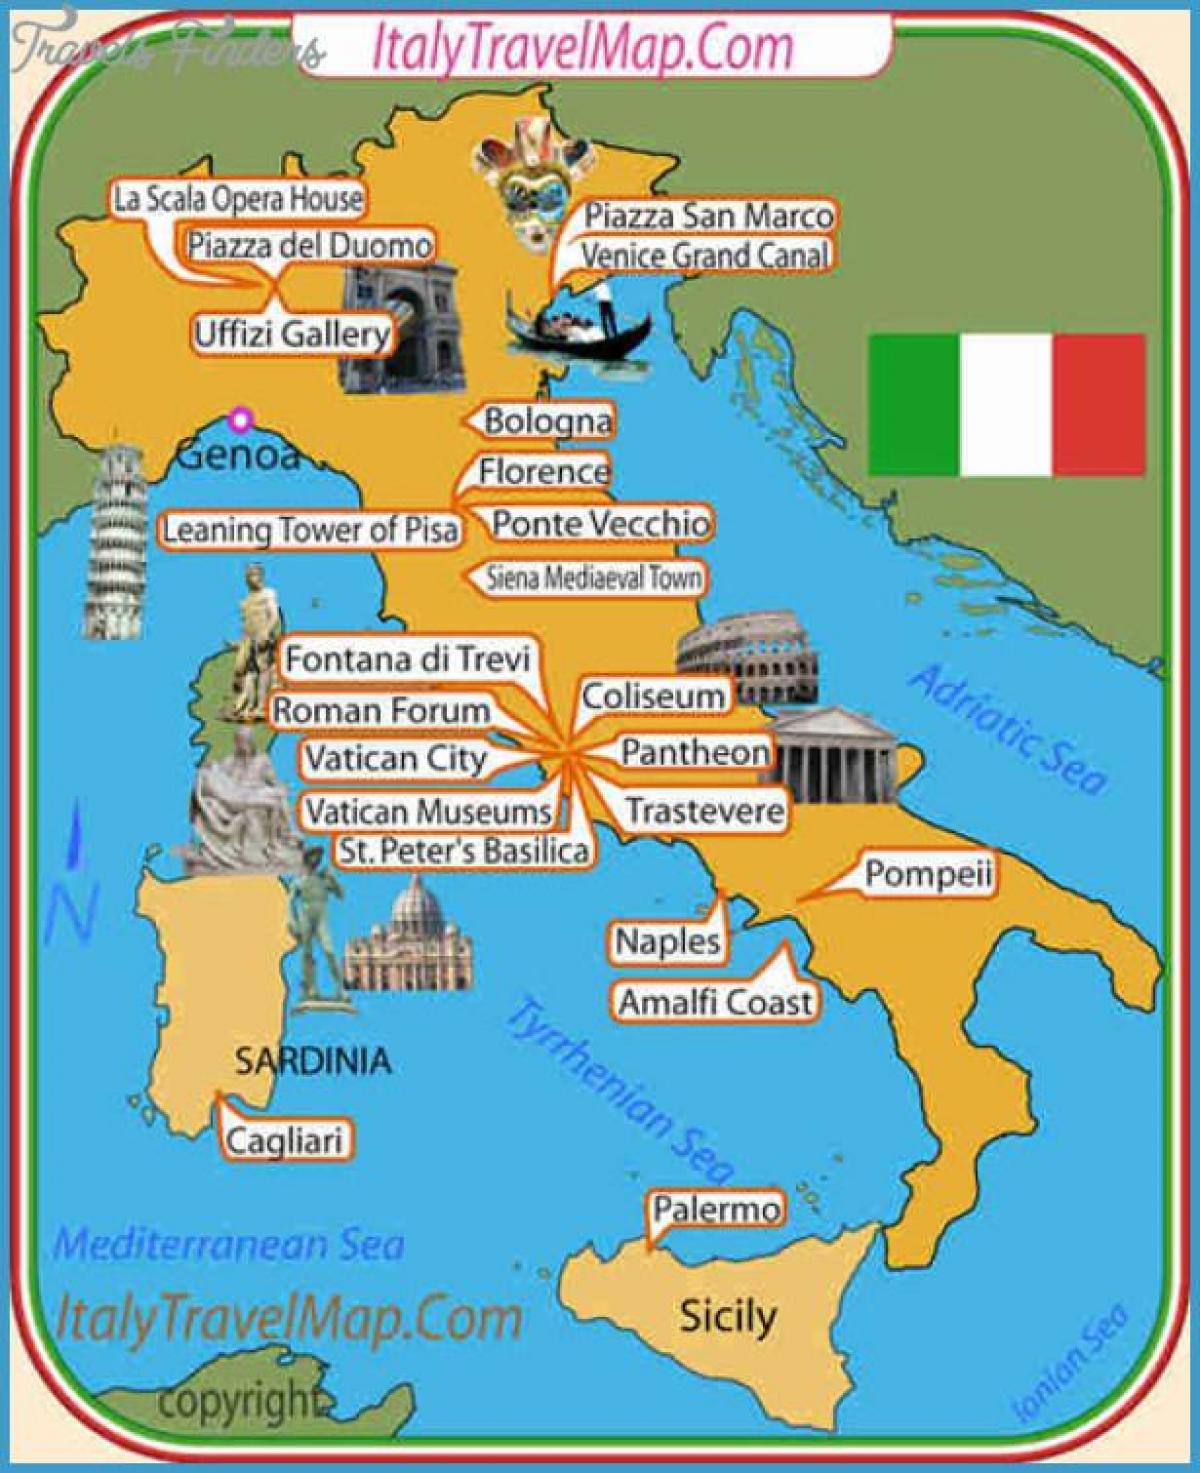 L'italie attractions de la carte